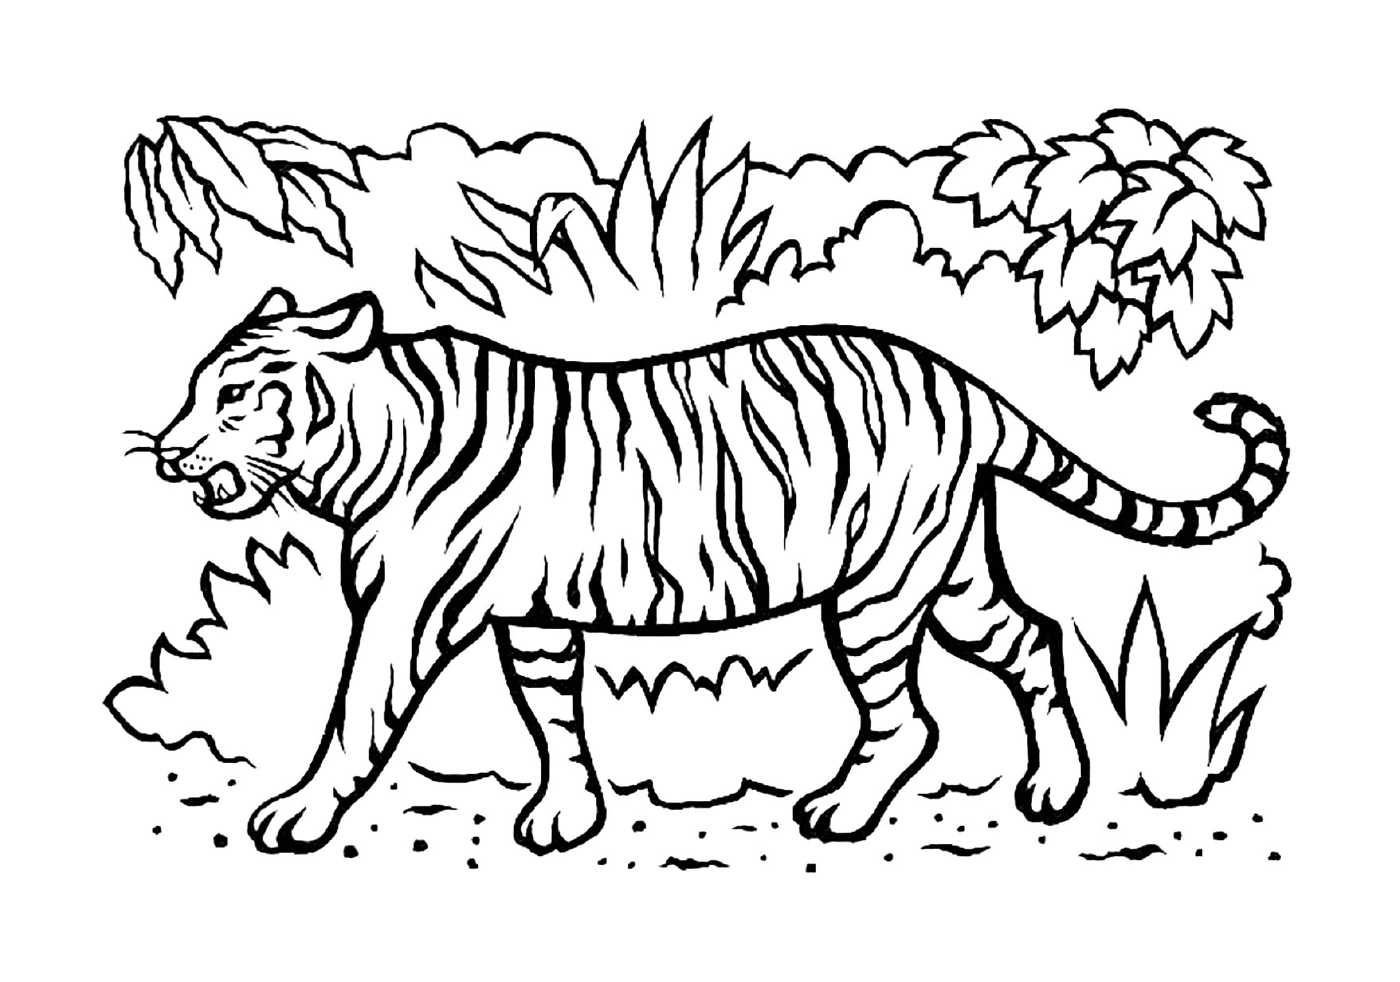  稀树草原上美丽的老虎 